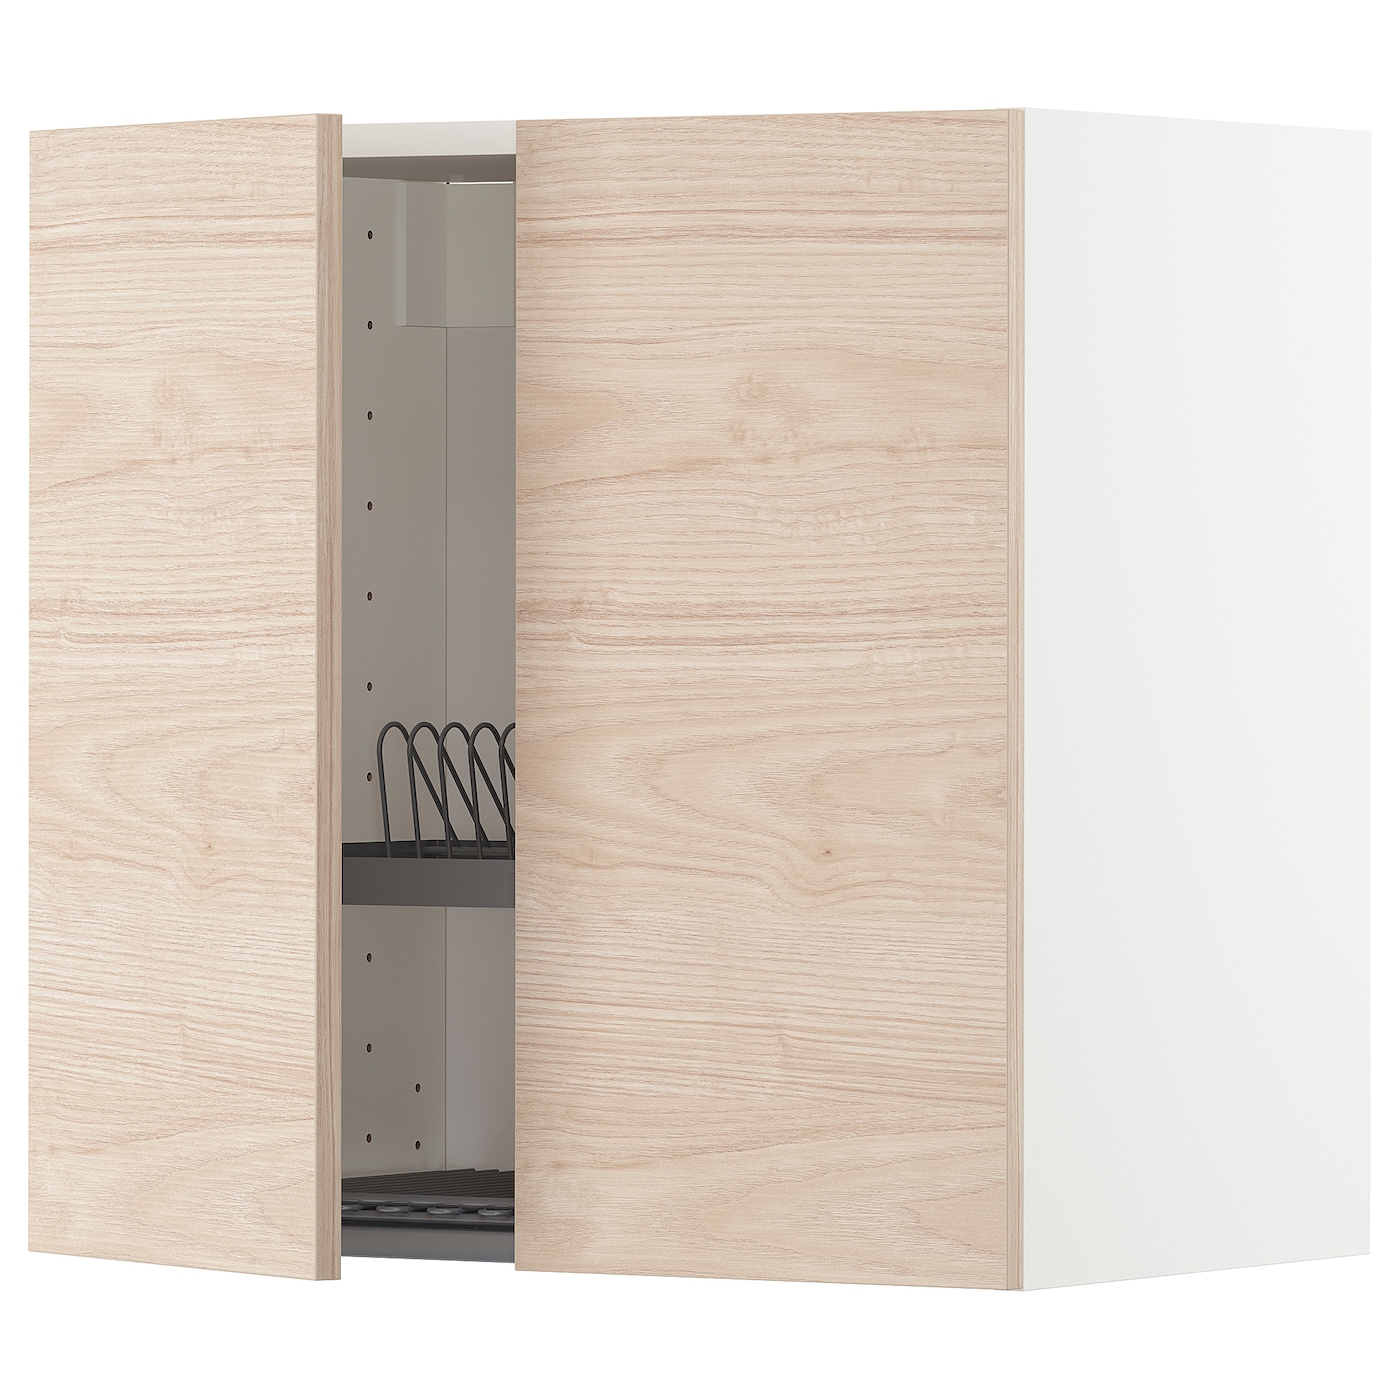 Навесной шкаф с сушилкой - METOD IKEA/ МЕТОД ИКЕА, 60х60 см, под беленый дуб/белый